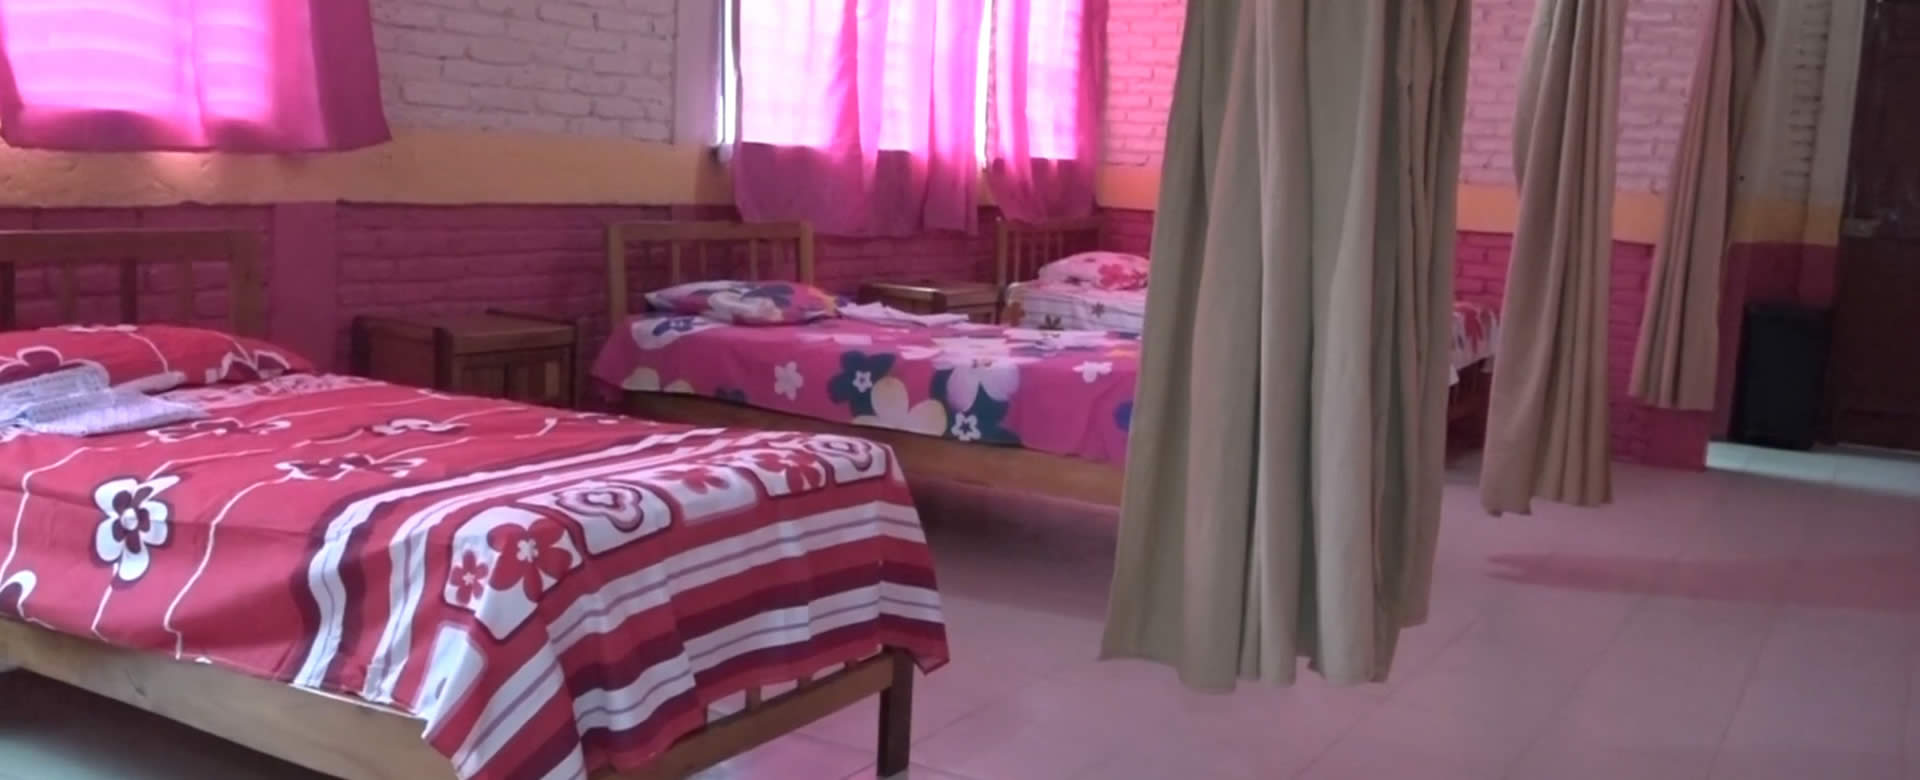 Casa Materna de San Juan de Limay permite una estadía más confortable a embarazadas